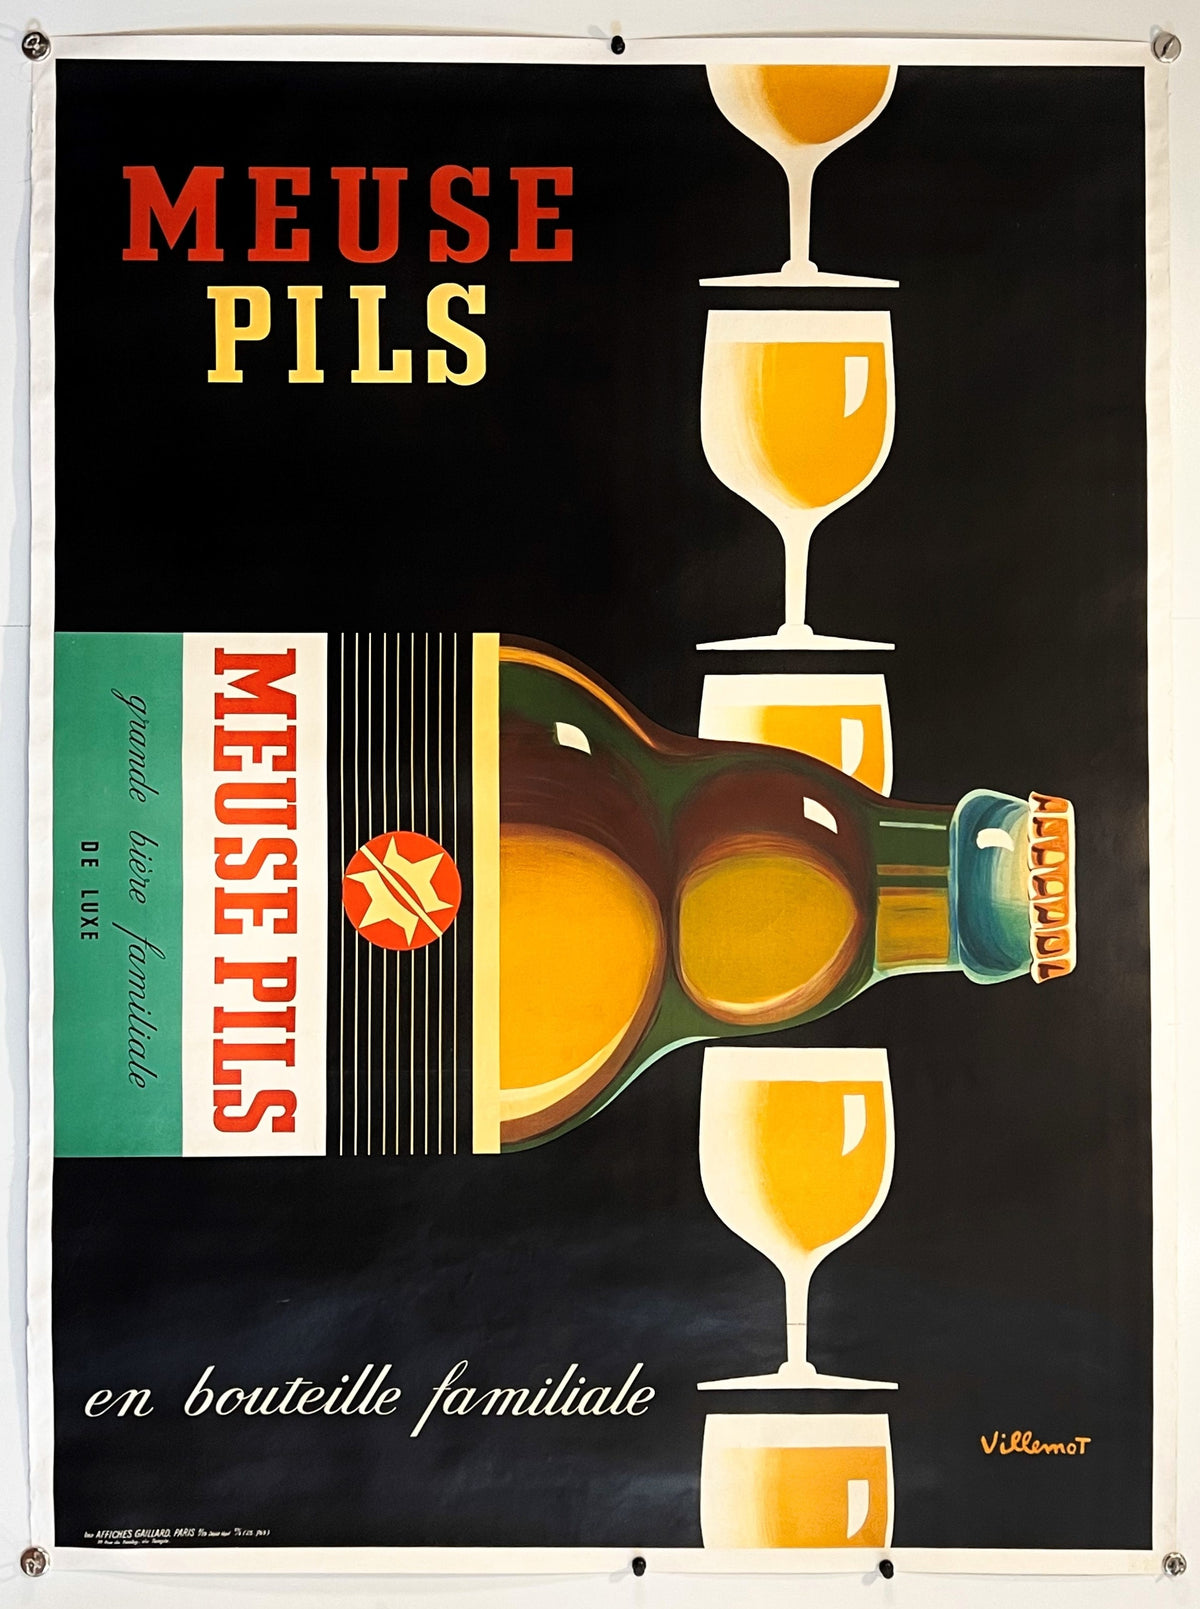 Meuse Pils by Villemot - Authentic Vintage Poster